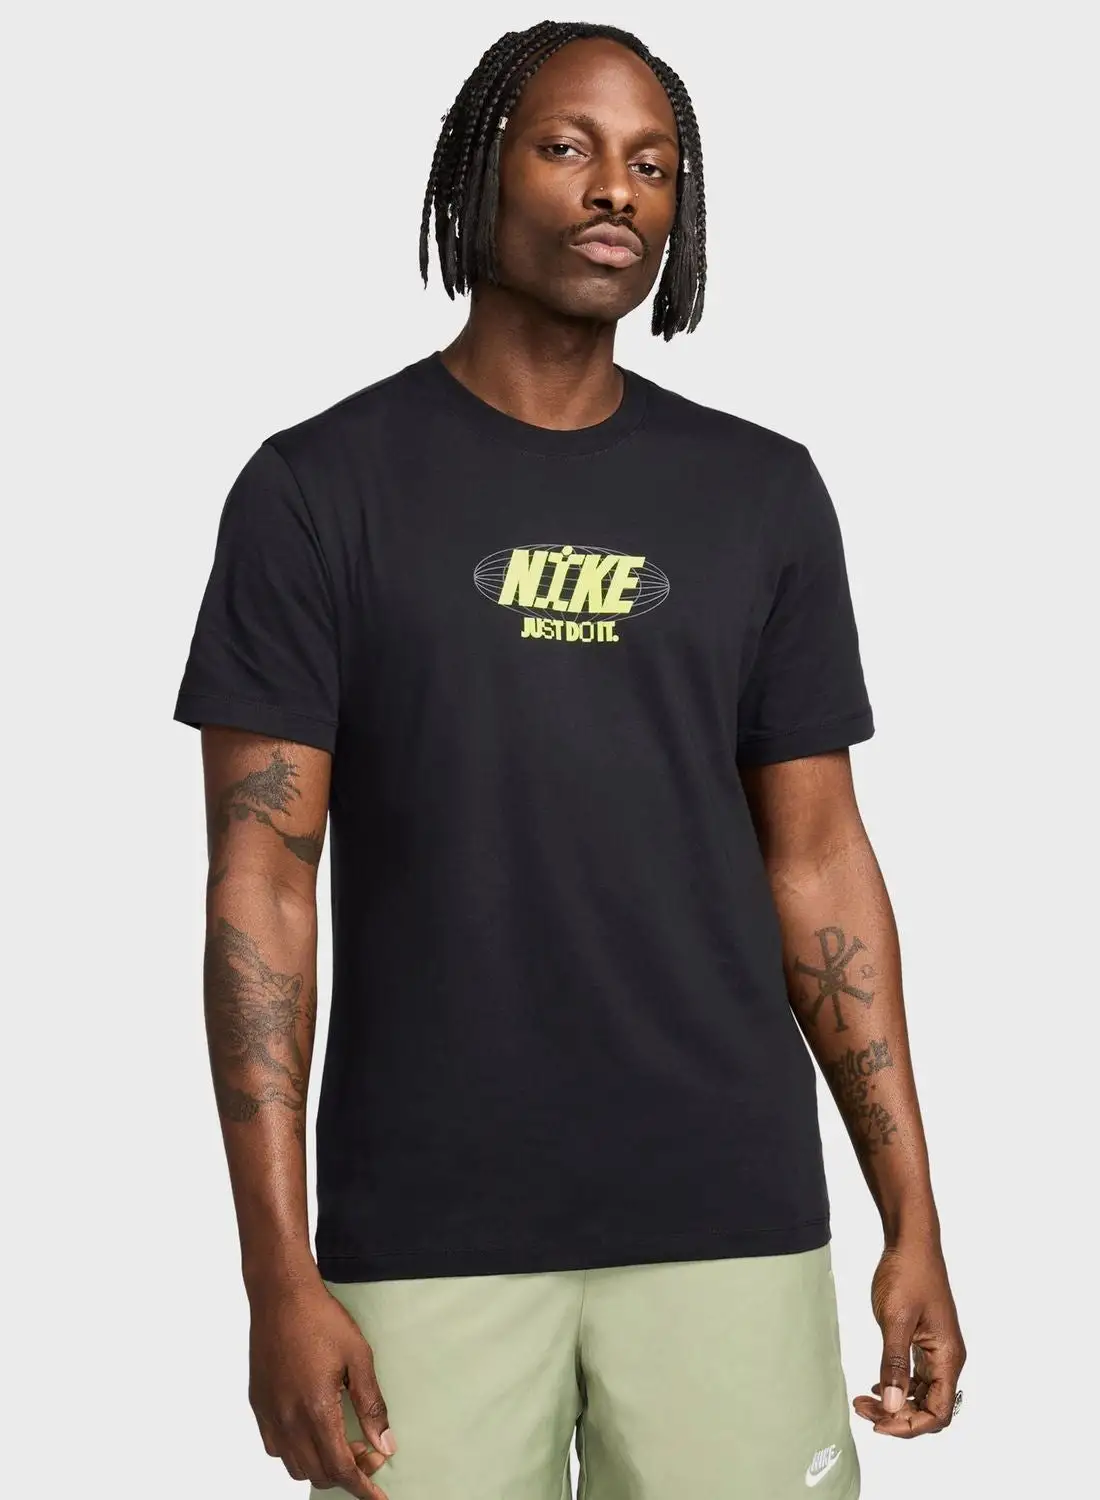 Nike Oc Pk7 2 T-Shirt